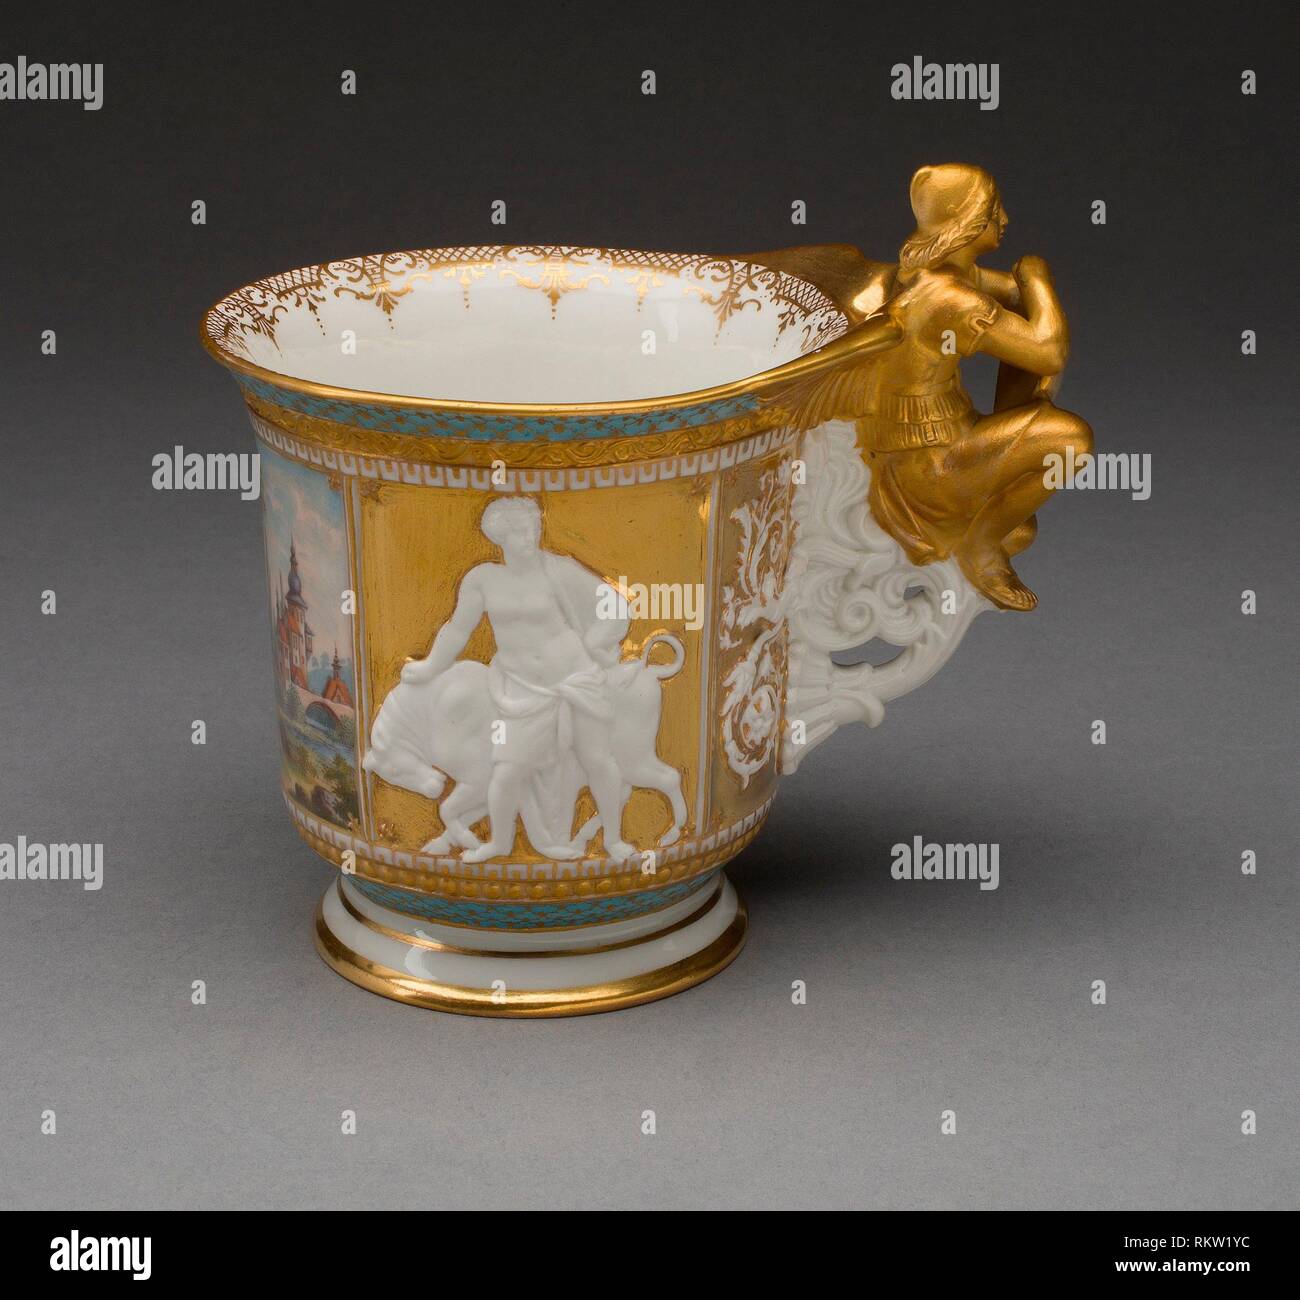 Berlin Porcelain Stockfotos und -bilder Kaufen - Alamy